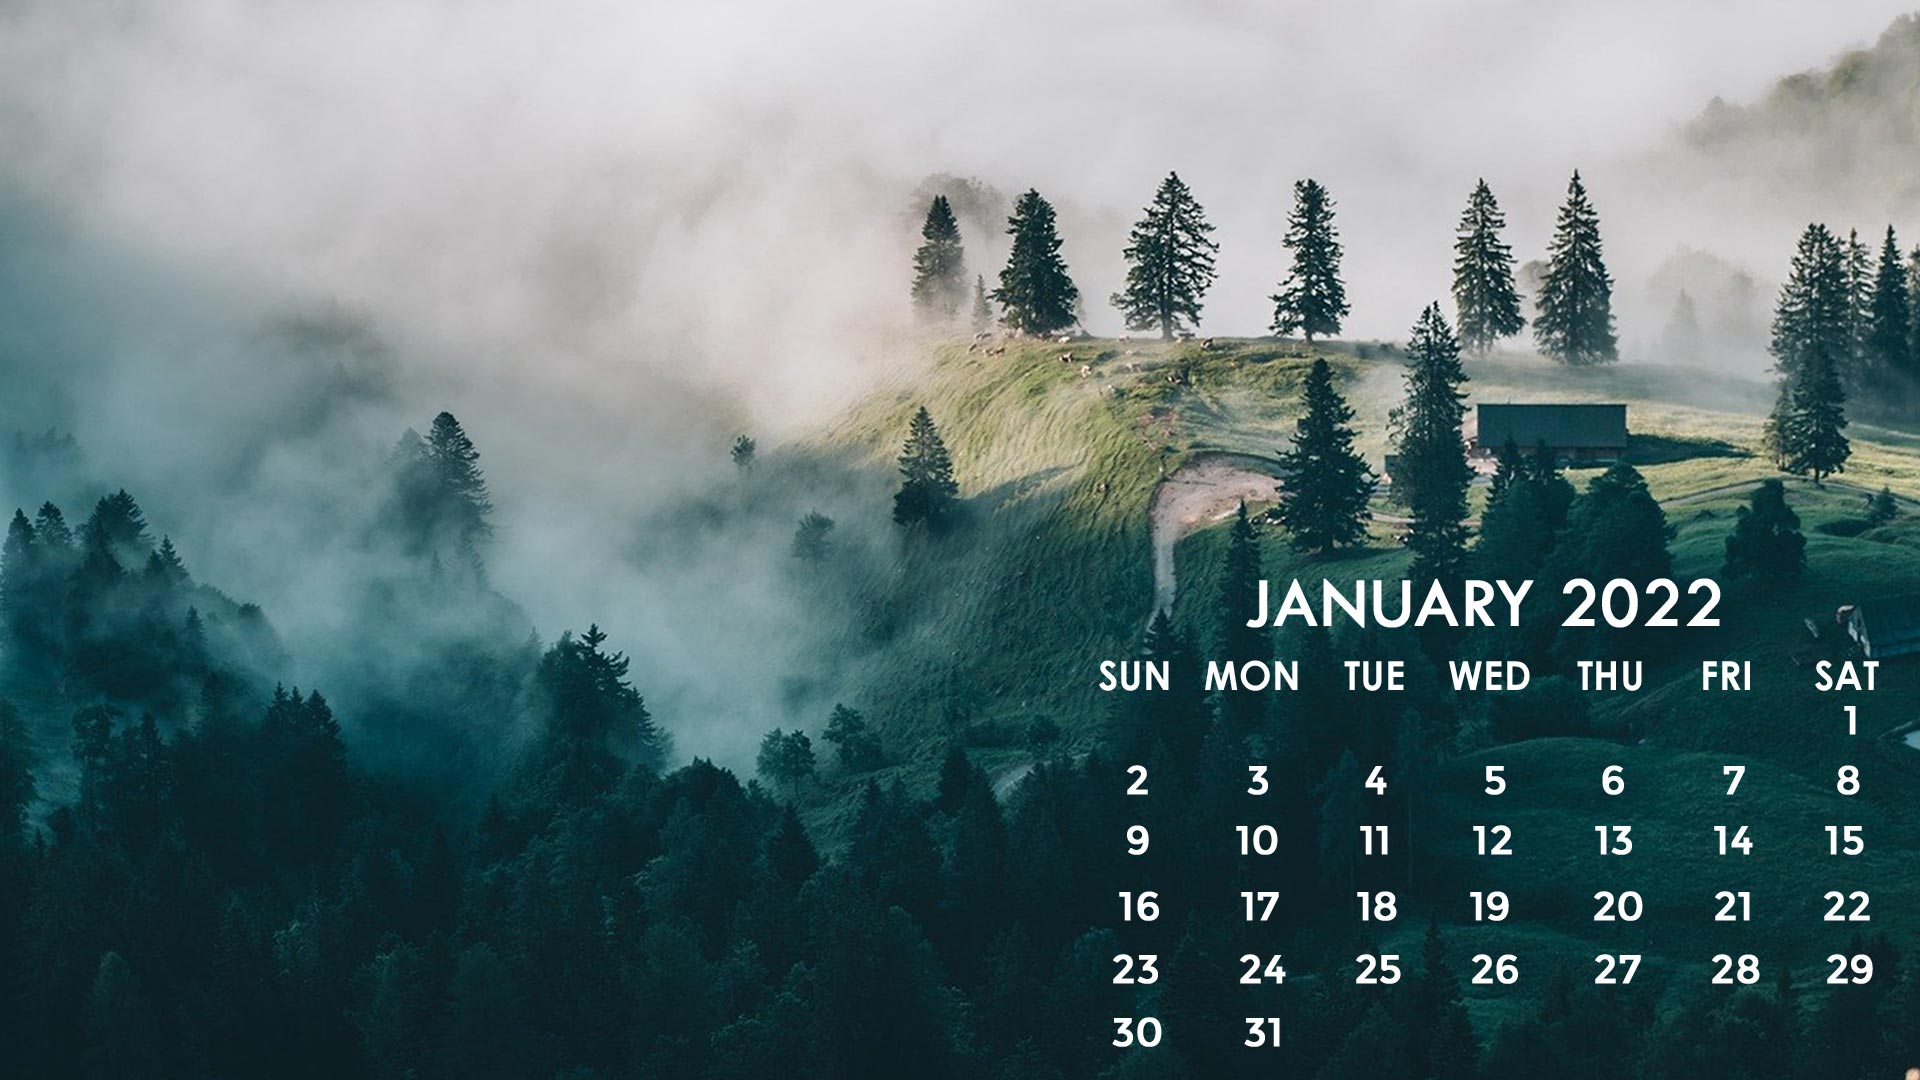 January 2022 calendar wallpaper desktop laptop computer background